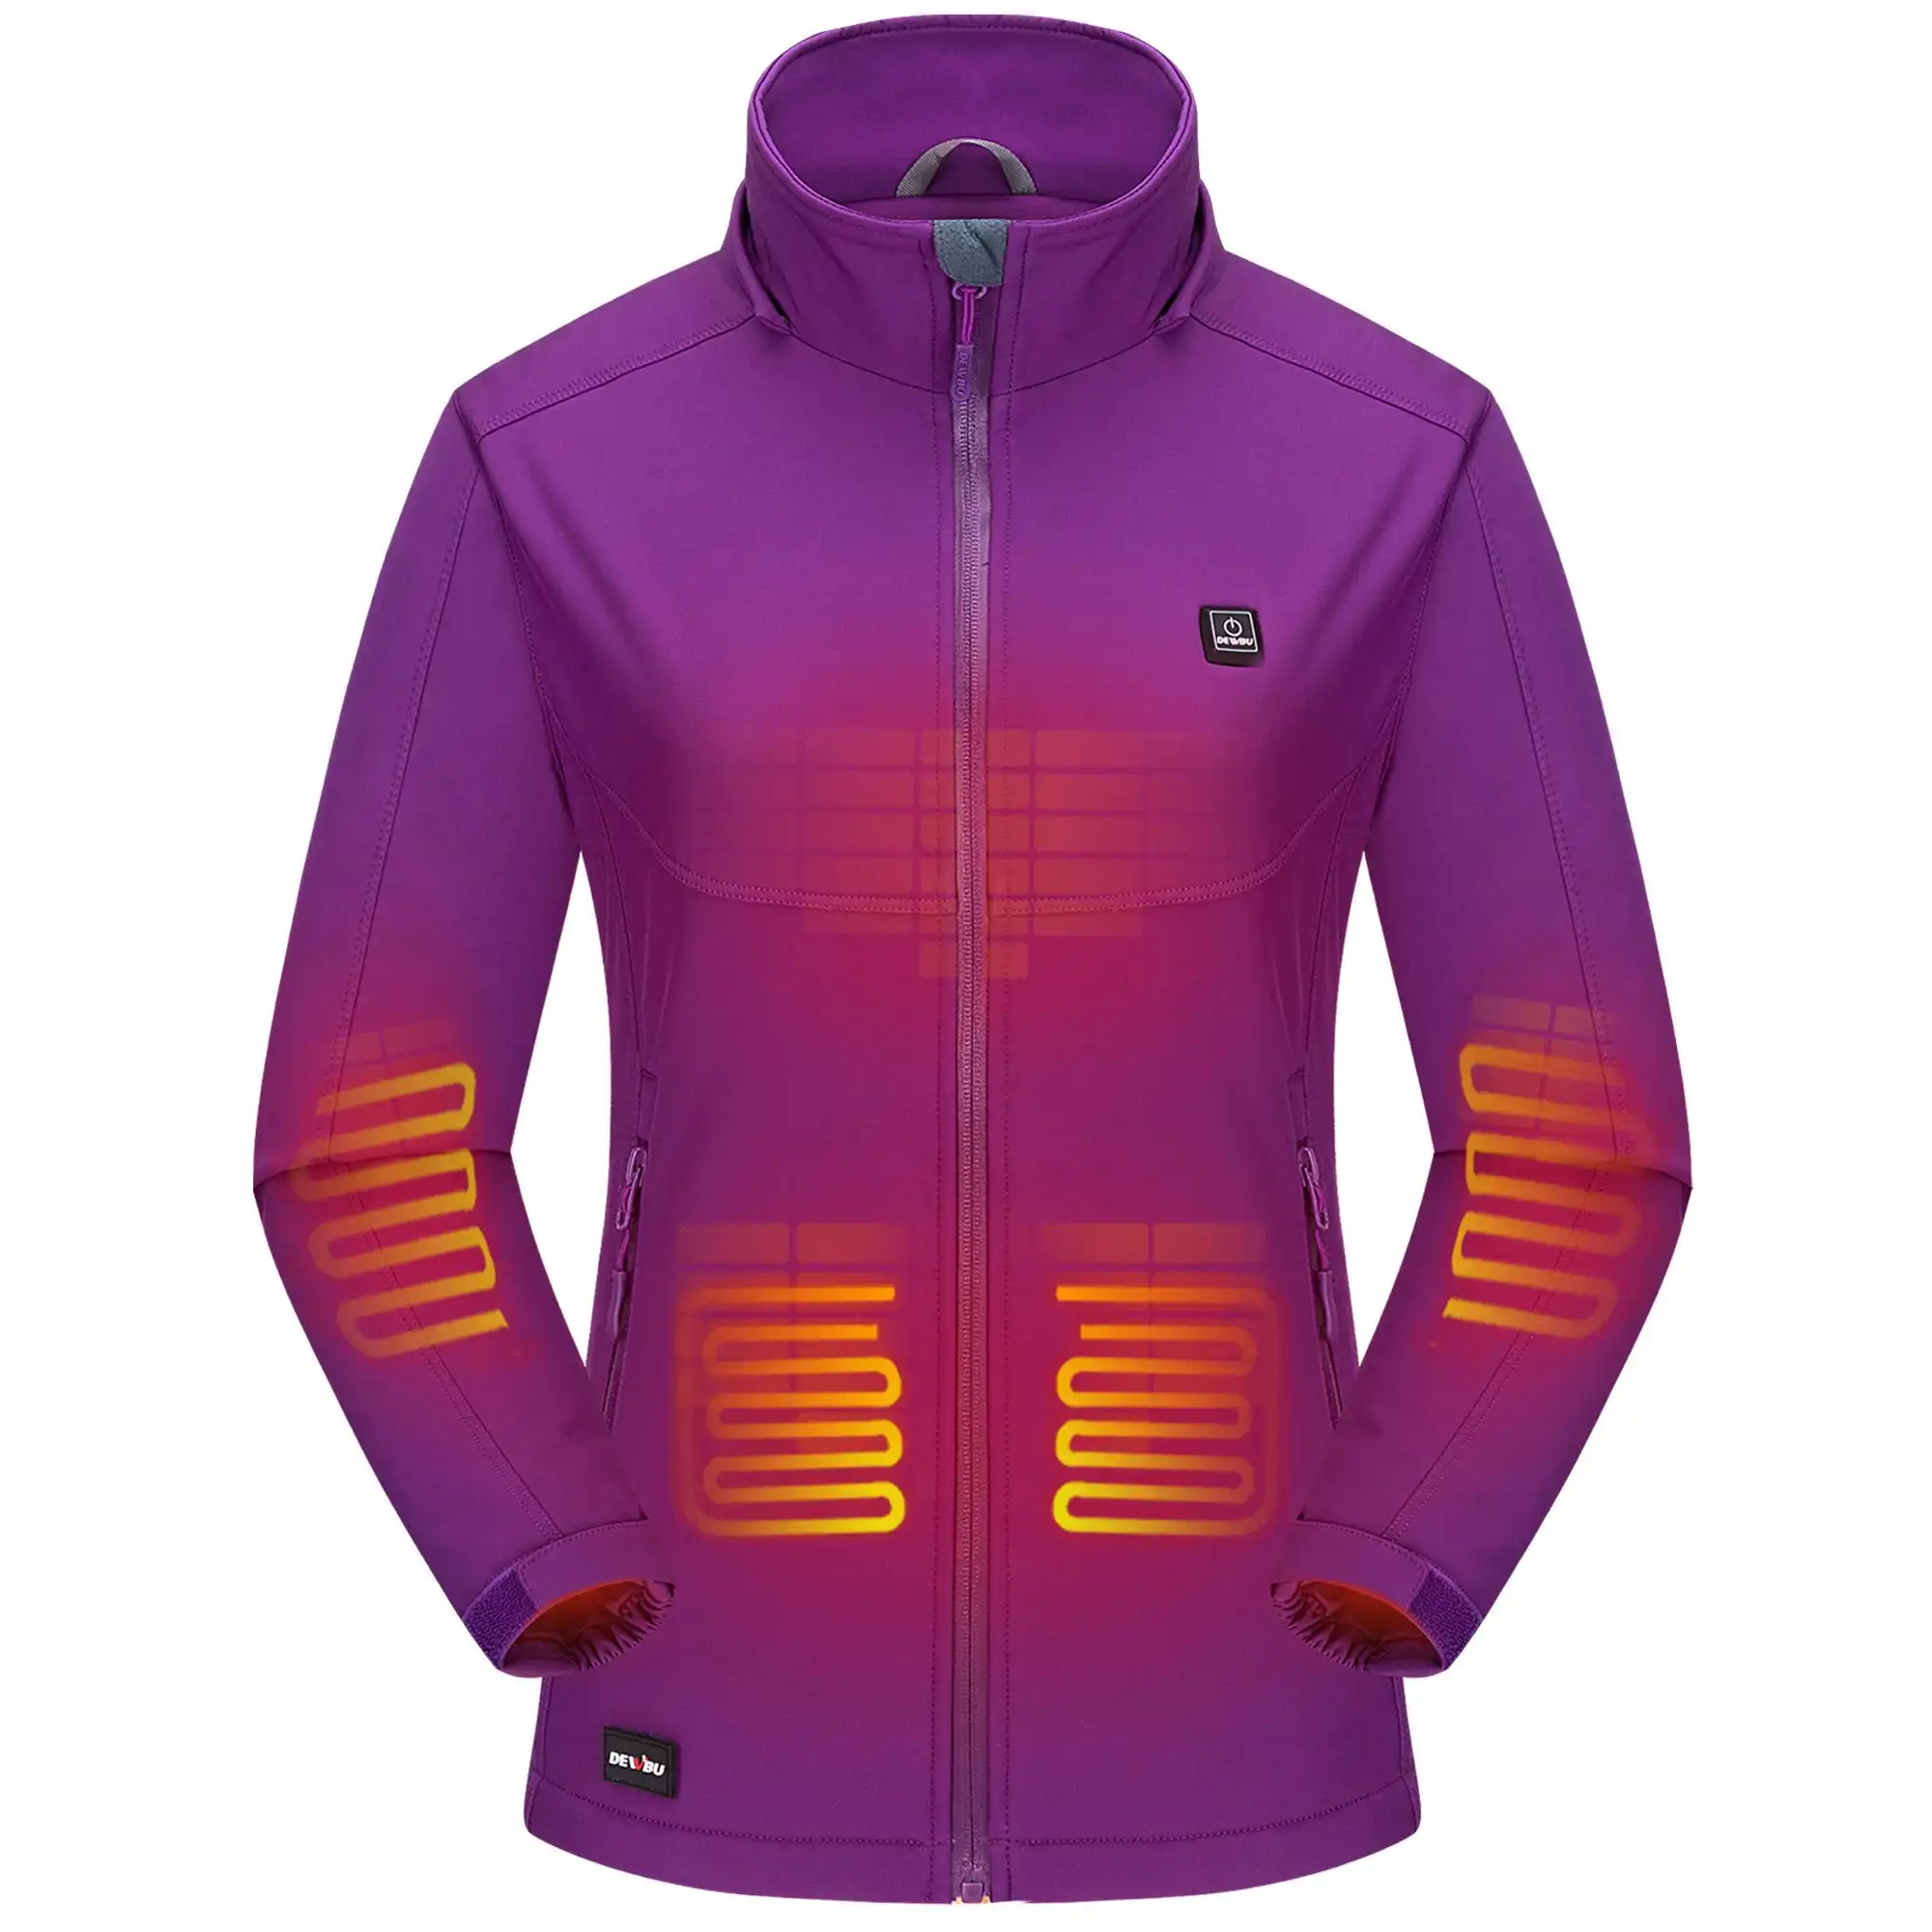 Nouveau design de combinaisons de ski professionnelles combinaison de ski personnalisée de haute qualité combinaison de course de ski violette veste chauffante rétro